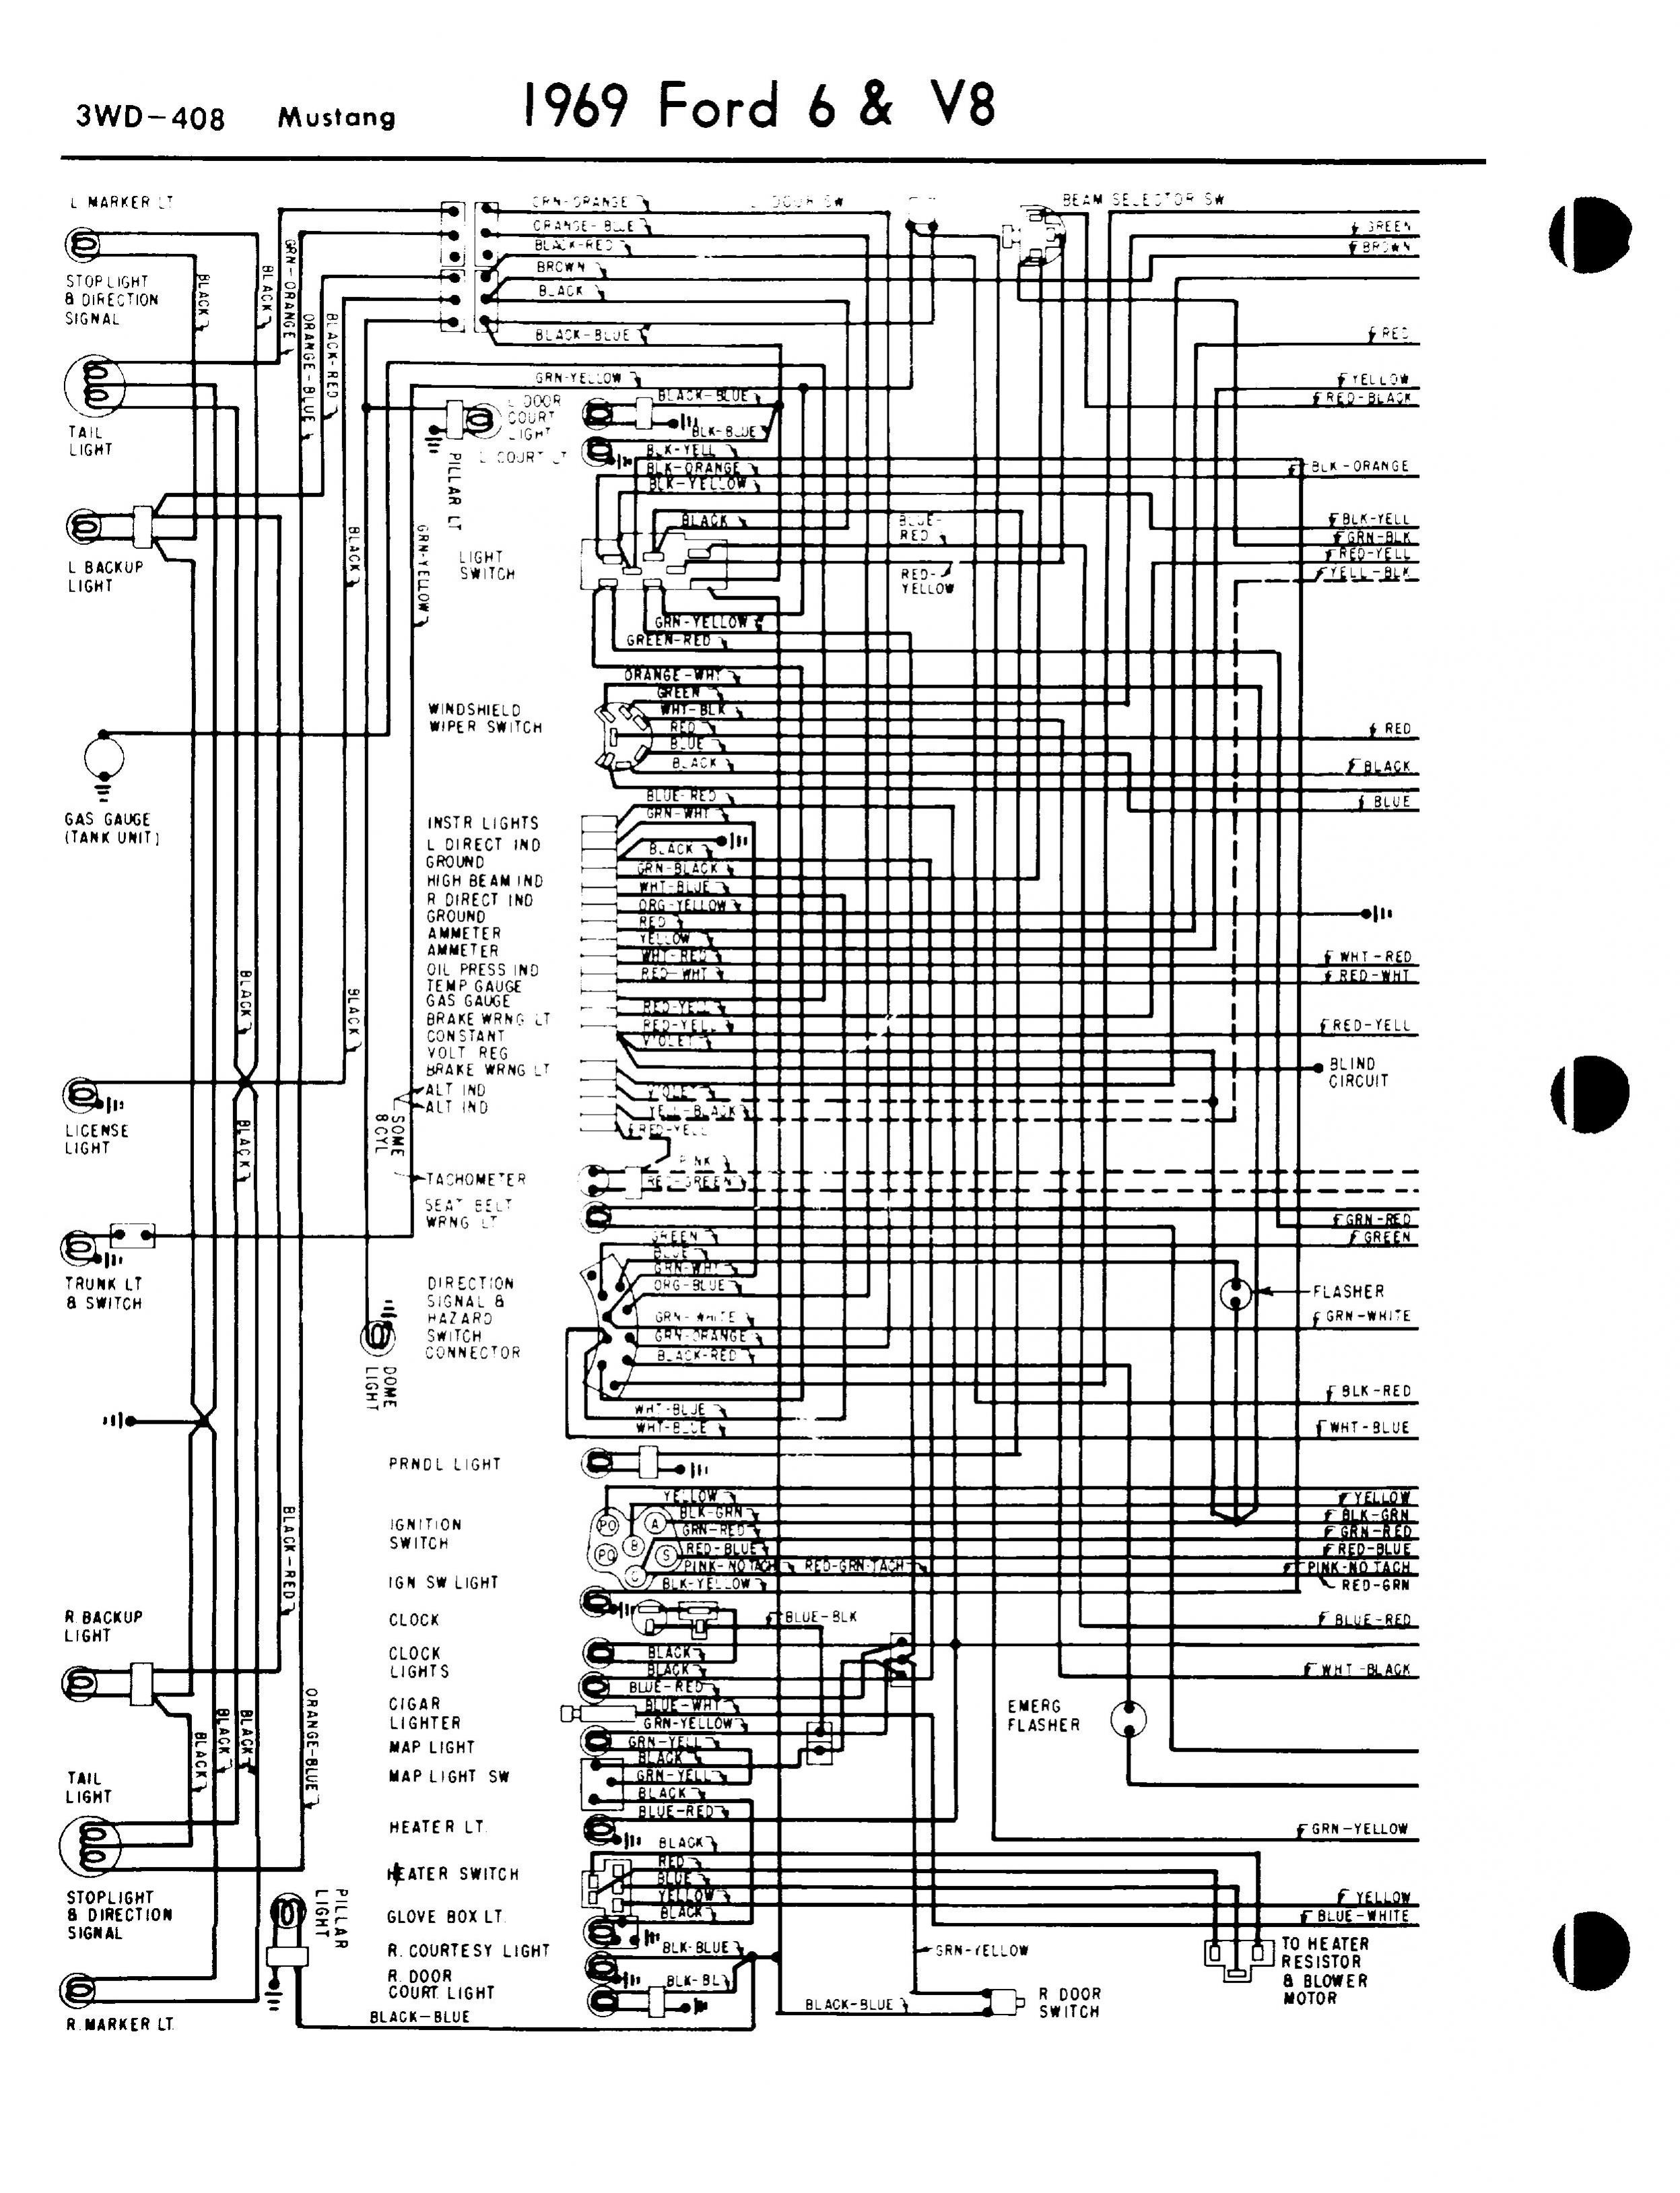 1983 mustang icm wiring diagram